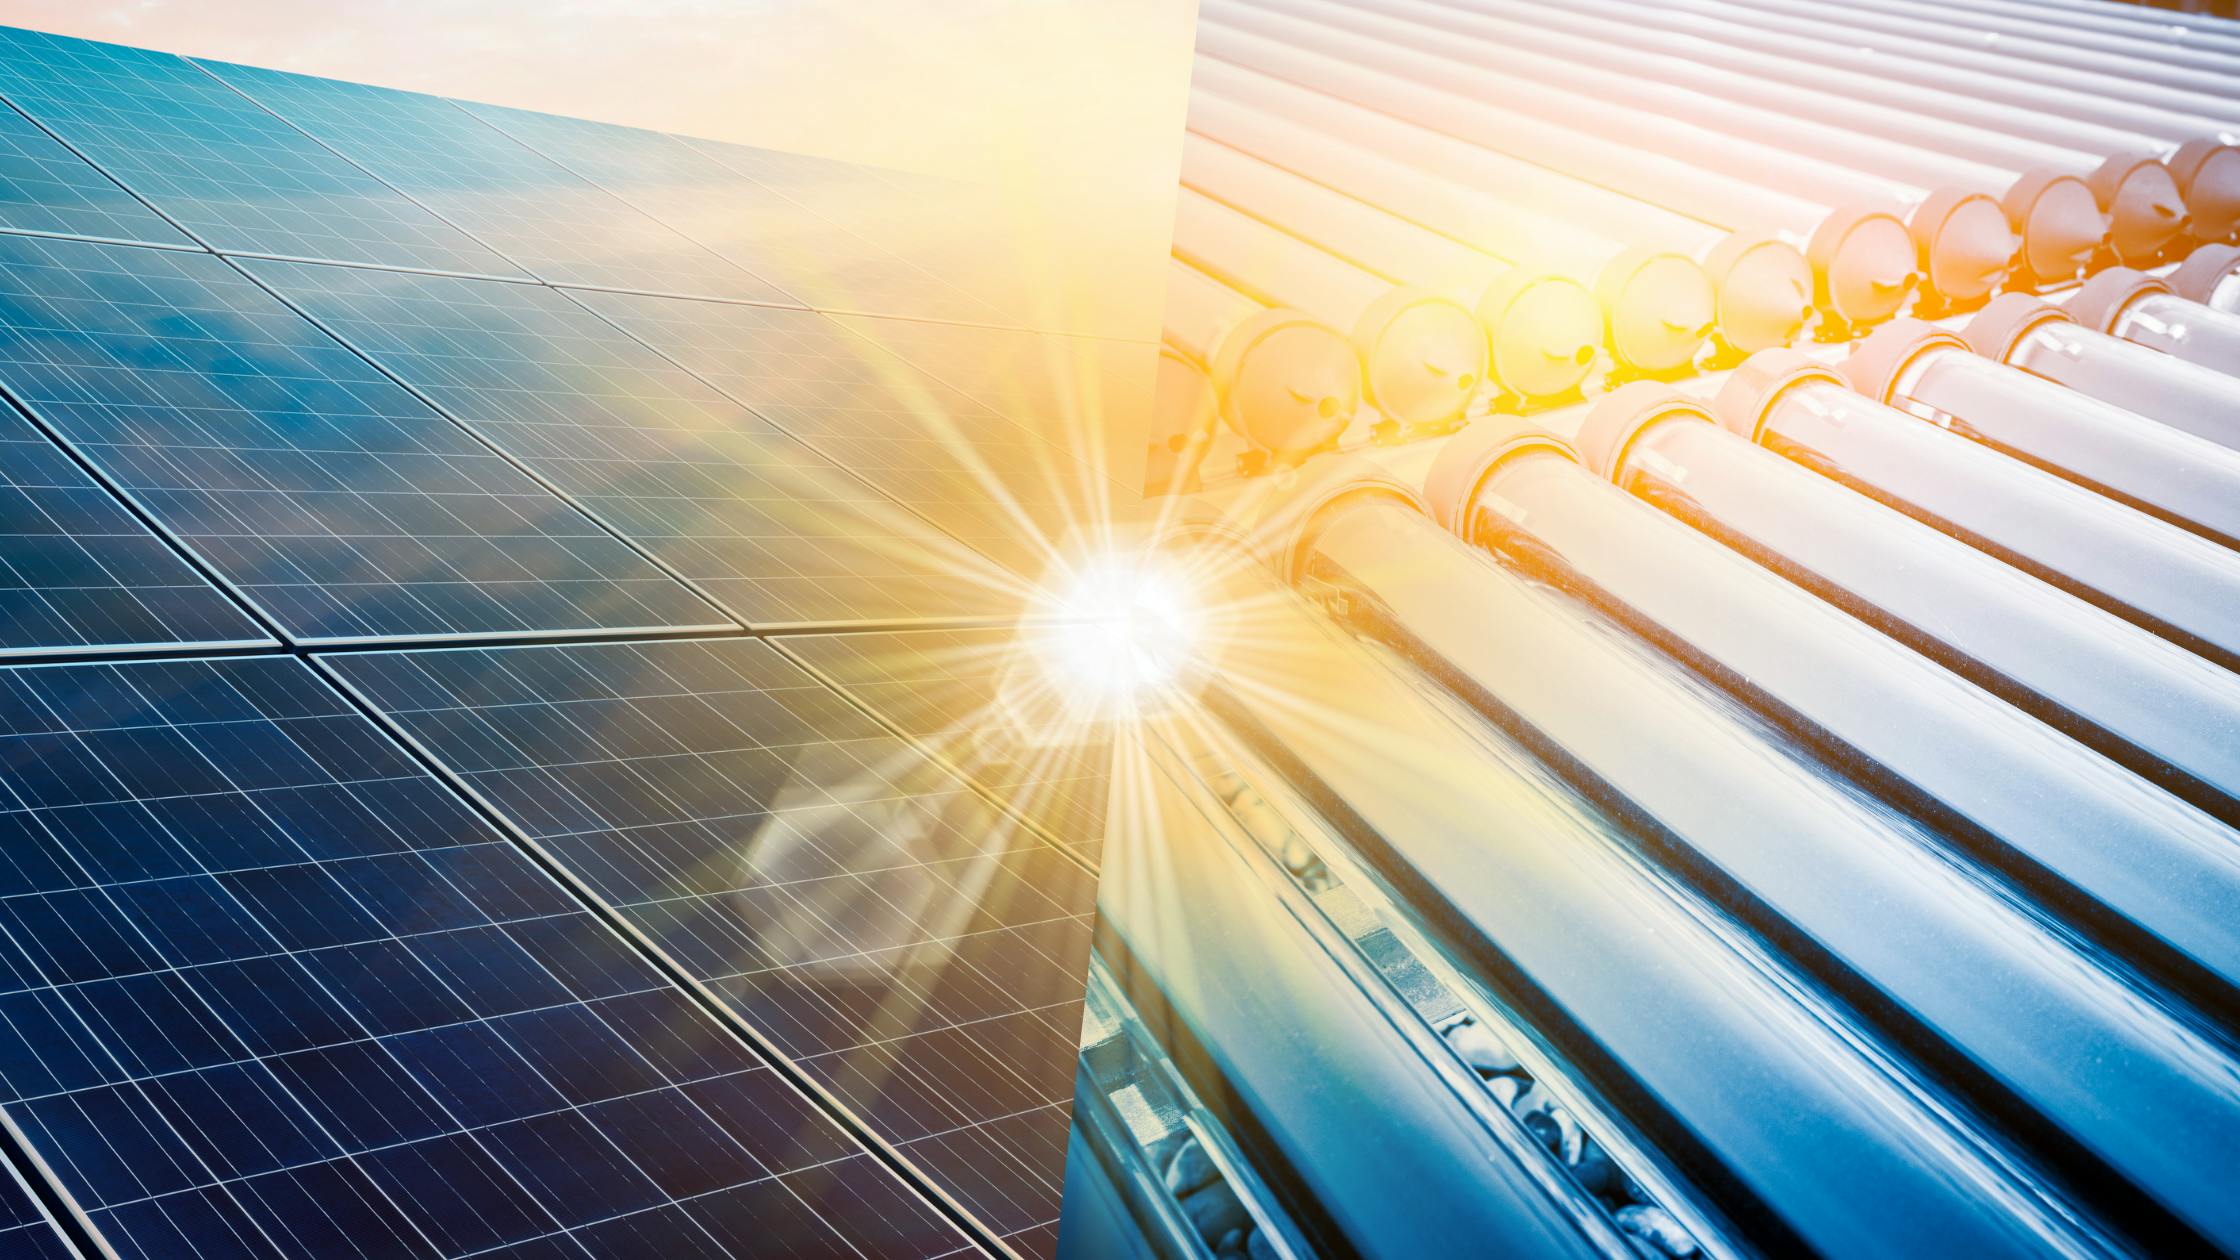 Photovoltaïque ou solaire thermique : Quelle est la meilleure option pour votre projet énergétique en Suisse ?